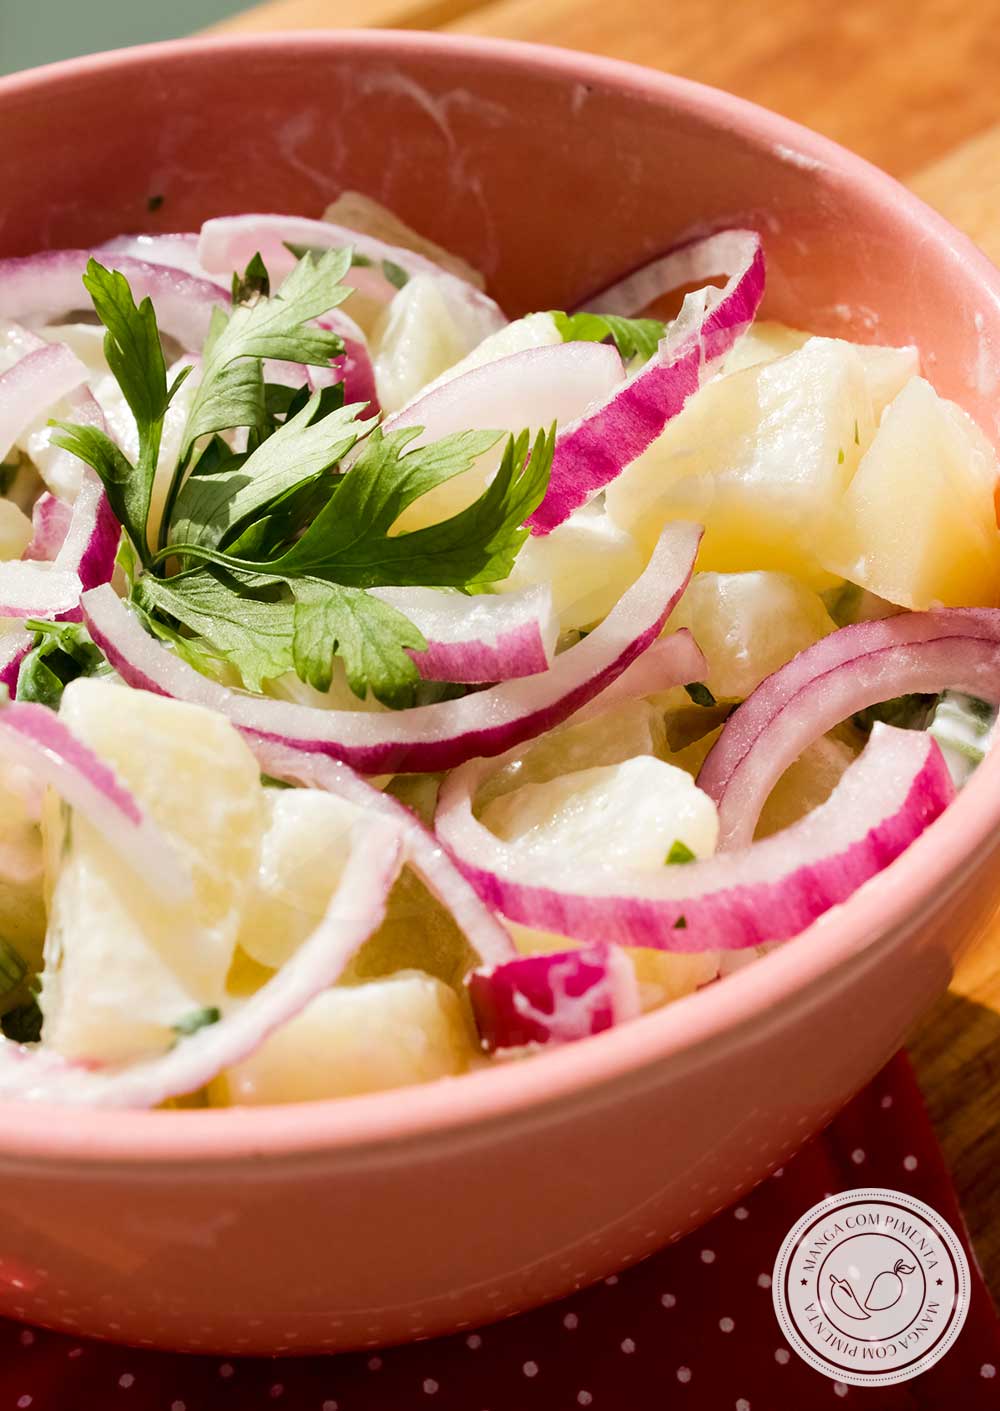 Receita de Salada de Batata Parisiense com Iogurte - um prato delicioso para servir no churrasco com a família. 